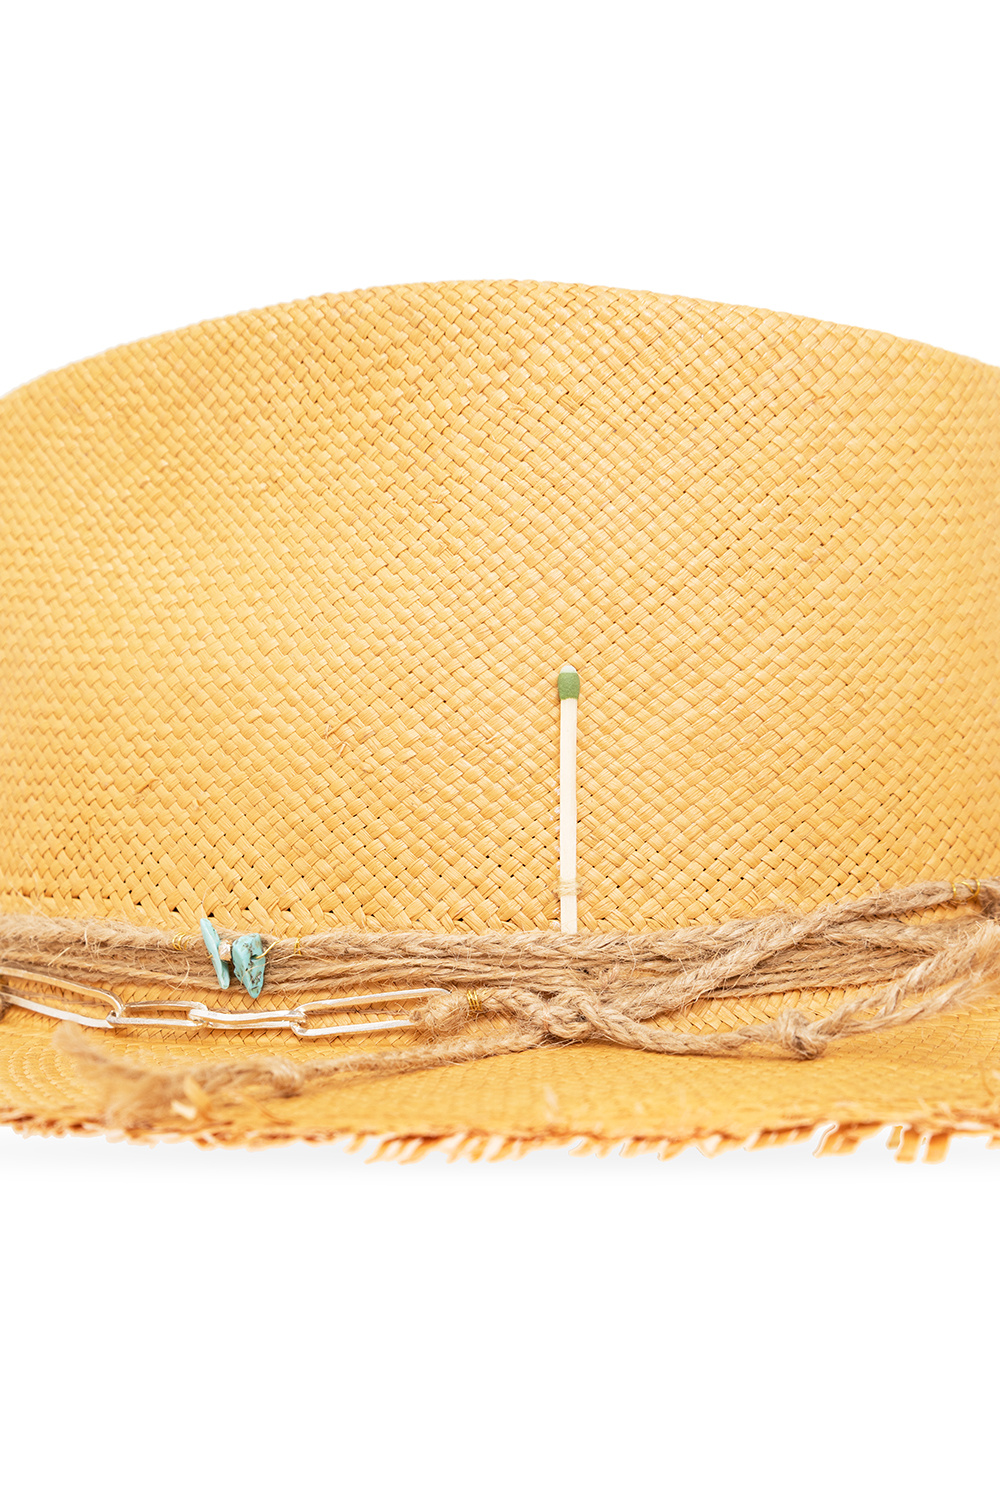 Nick Fouquet ‘Palermo’ straw hat